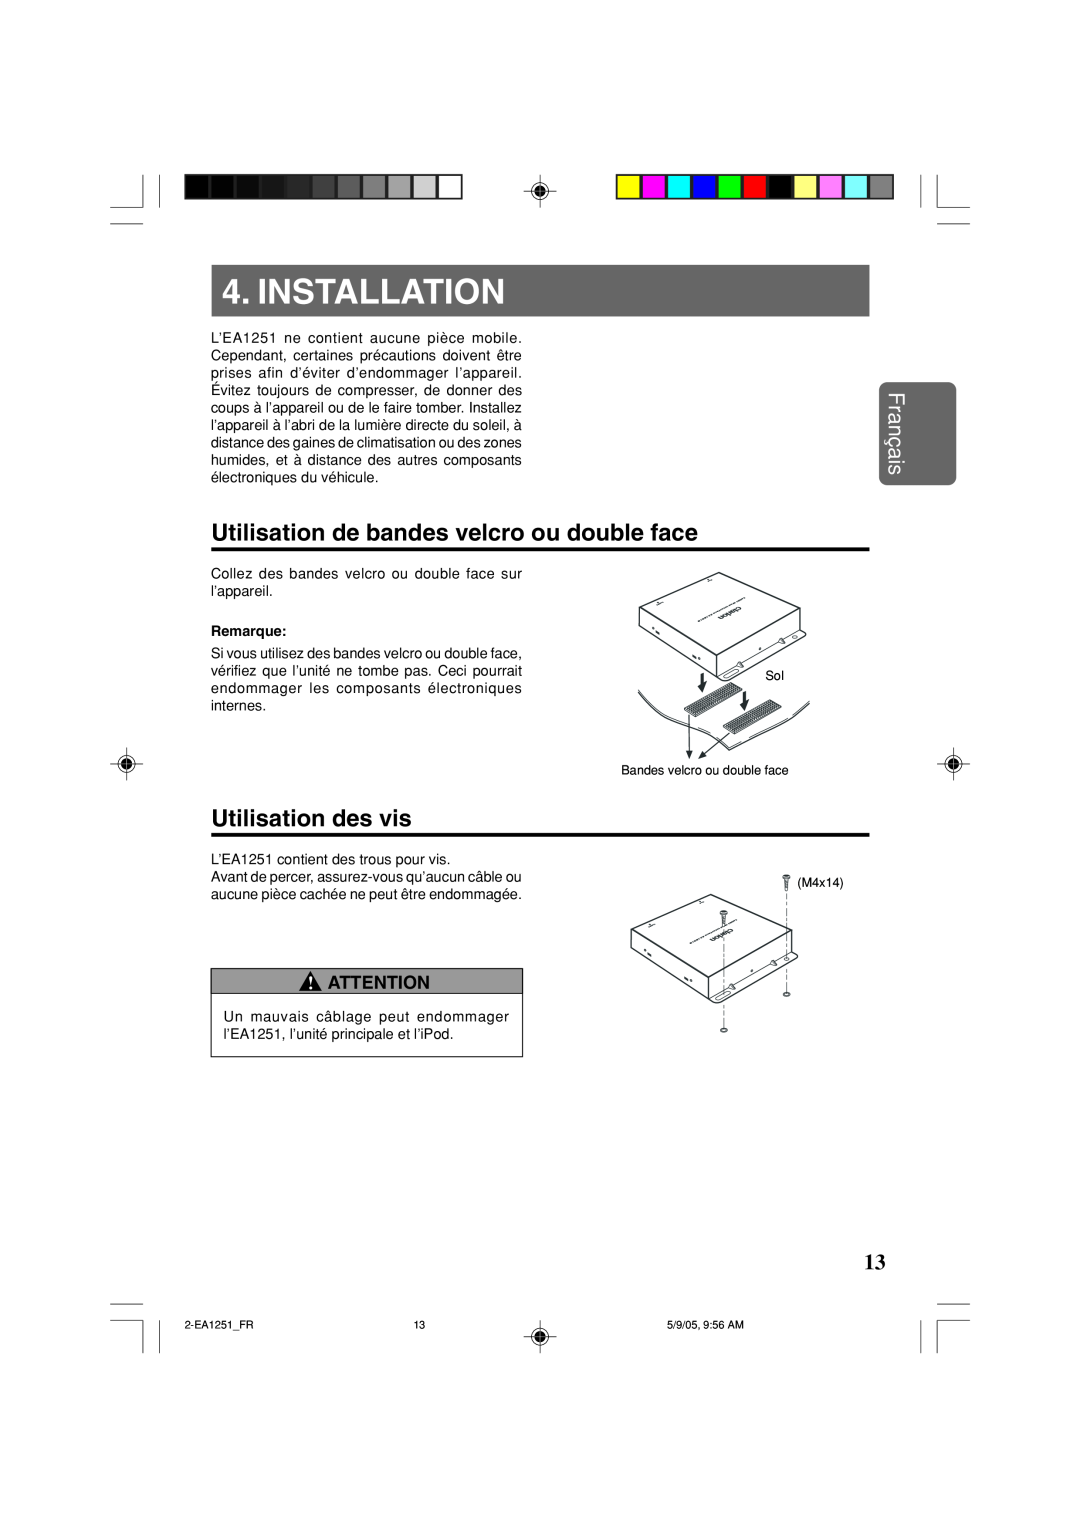 Clarion EA1251 owner manual Utilisation de bandes velcro ou double face, Utilisation des vis, Installation, Français 